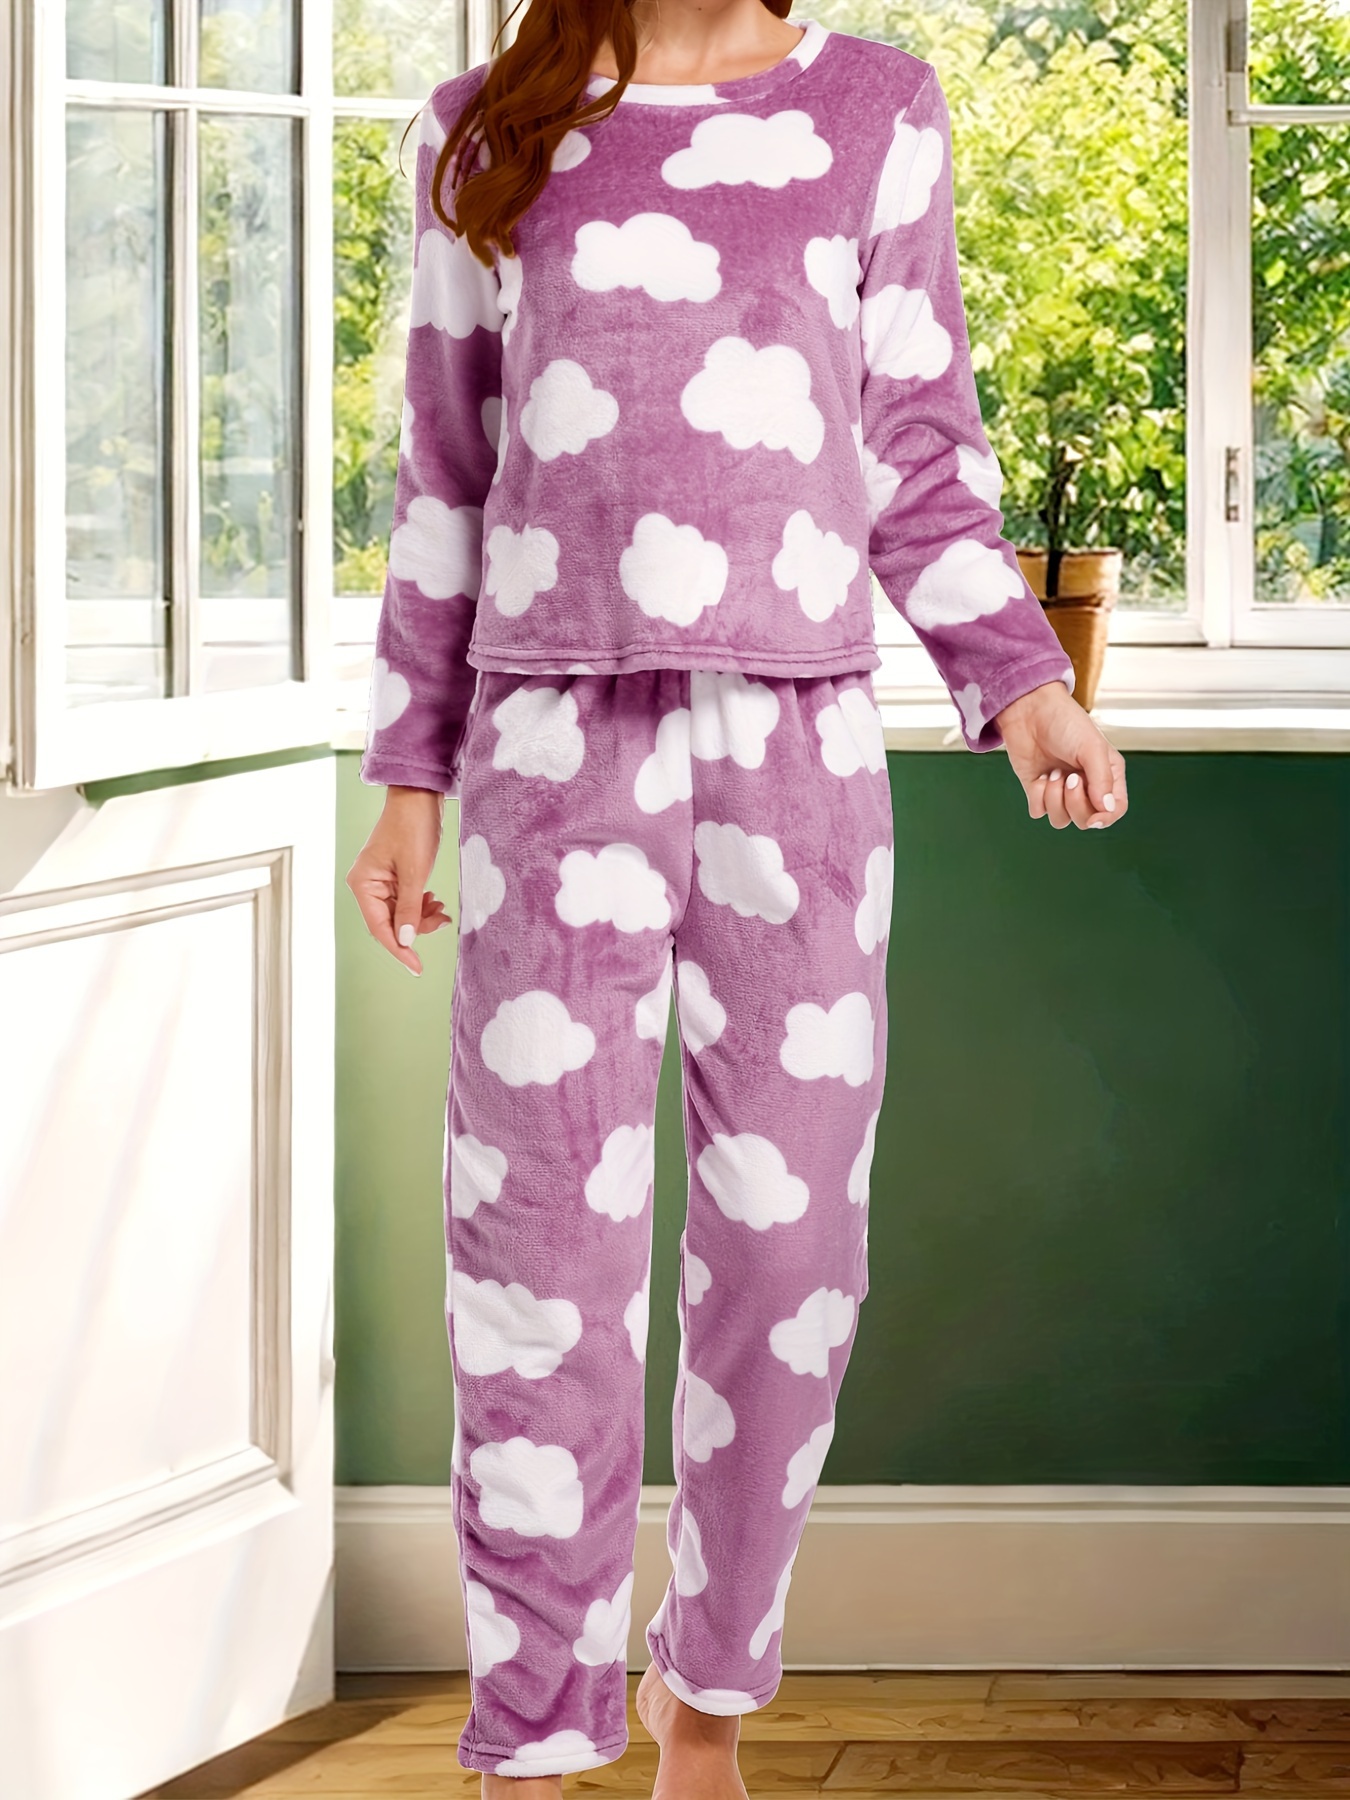 Cozyland pajamas - the cozy way through the winter